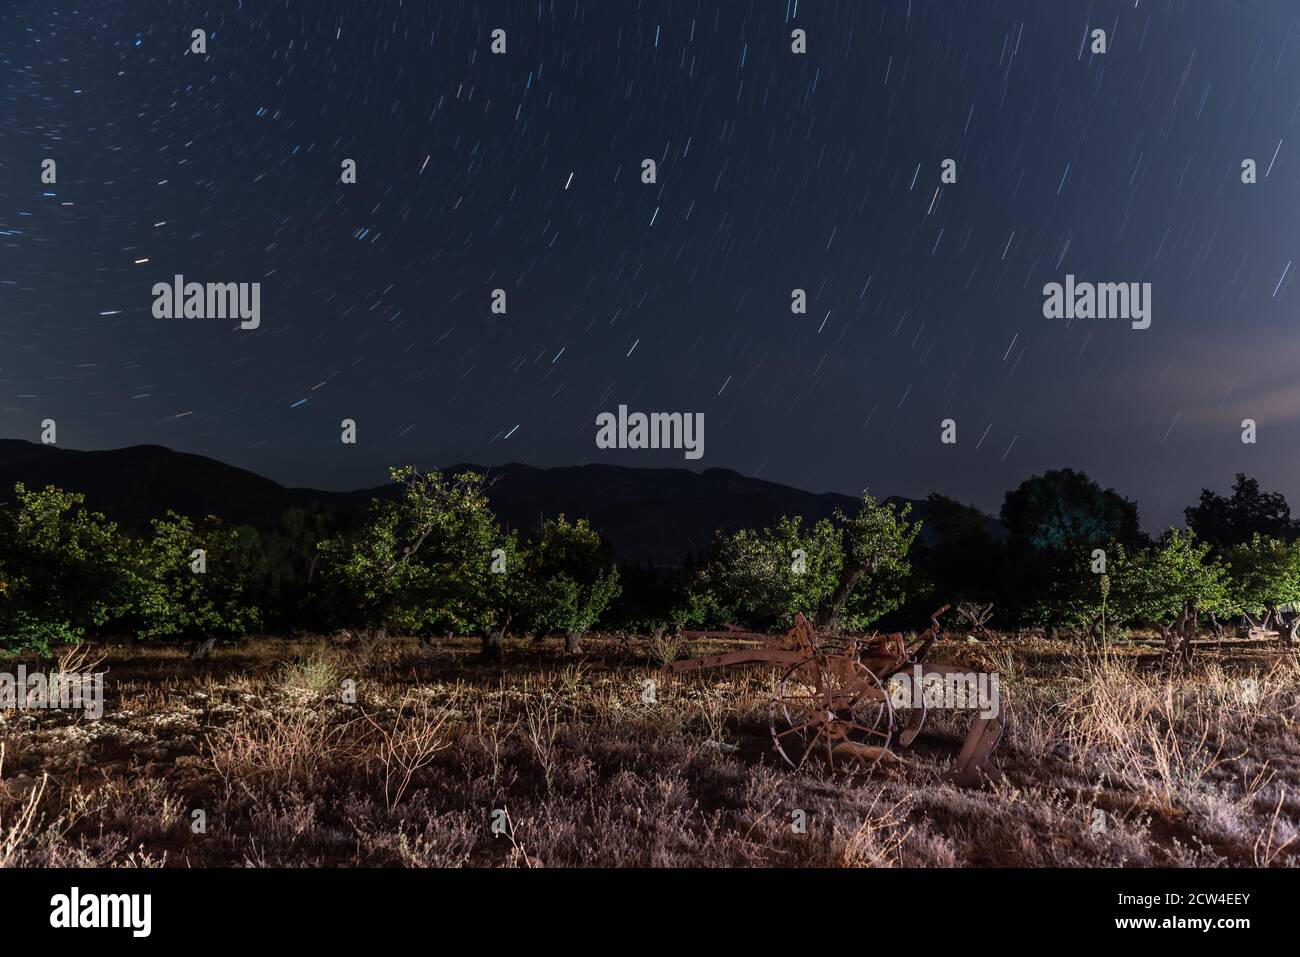 Sternbilder der Astronomie Streifen in kreisförmigen Mustern über den Baumgarten mit Berghorizont im Schatten. Stockfoto